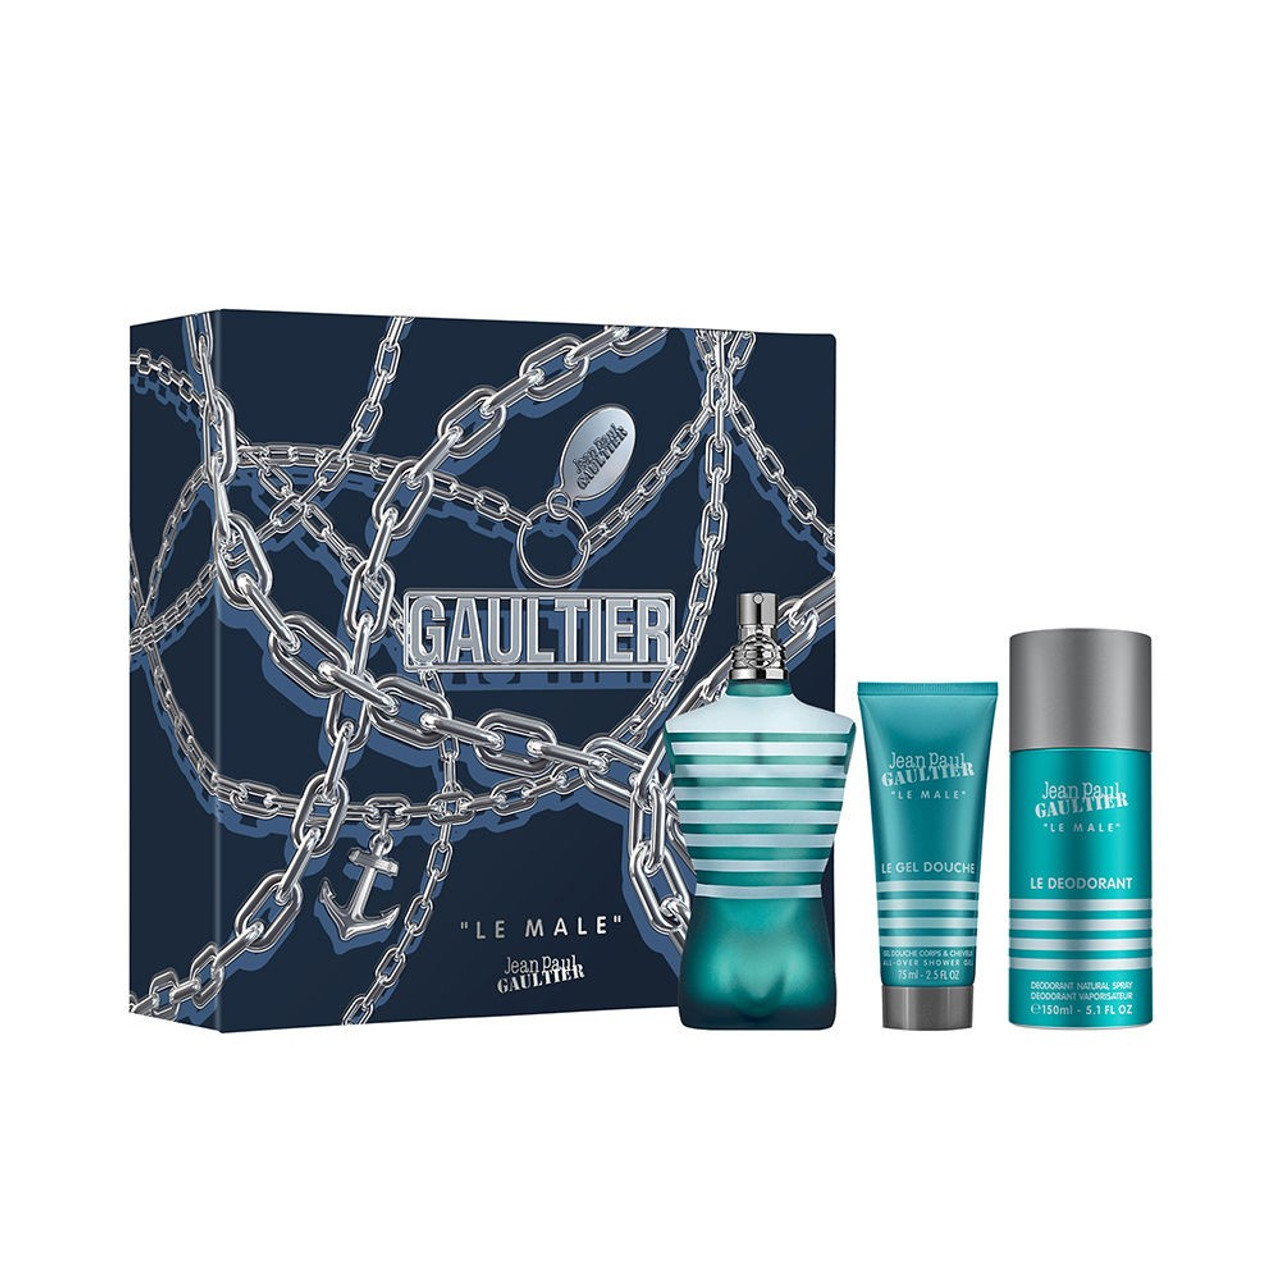 Jean Paul Gaultier Le Male Eau De Toilette Spray 75ml